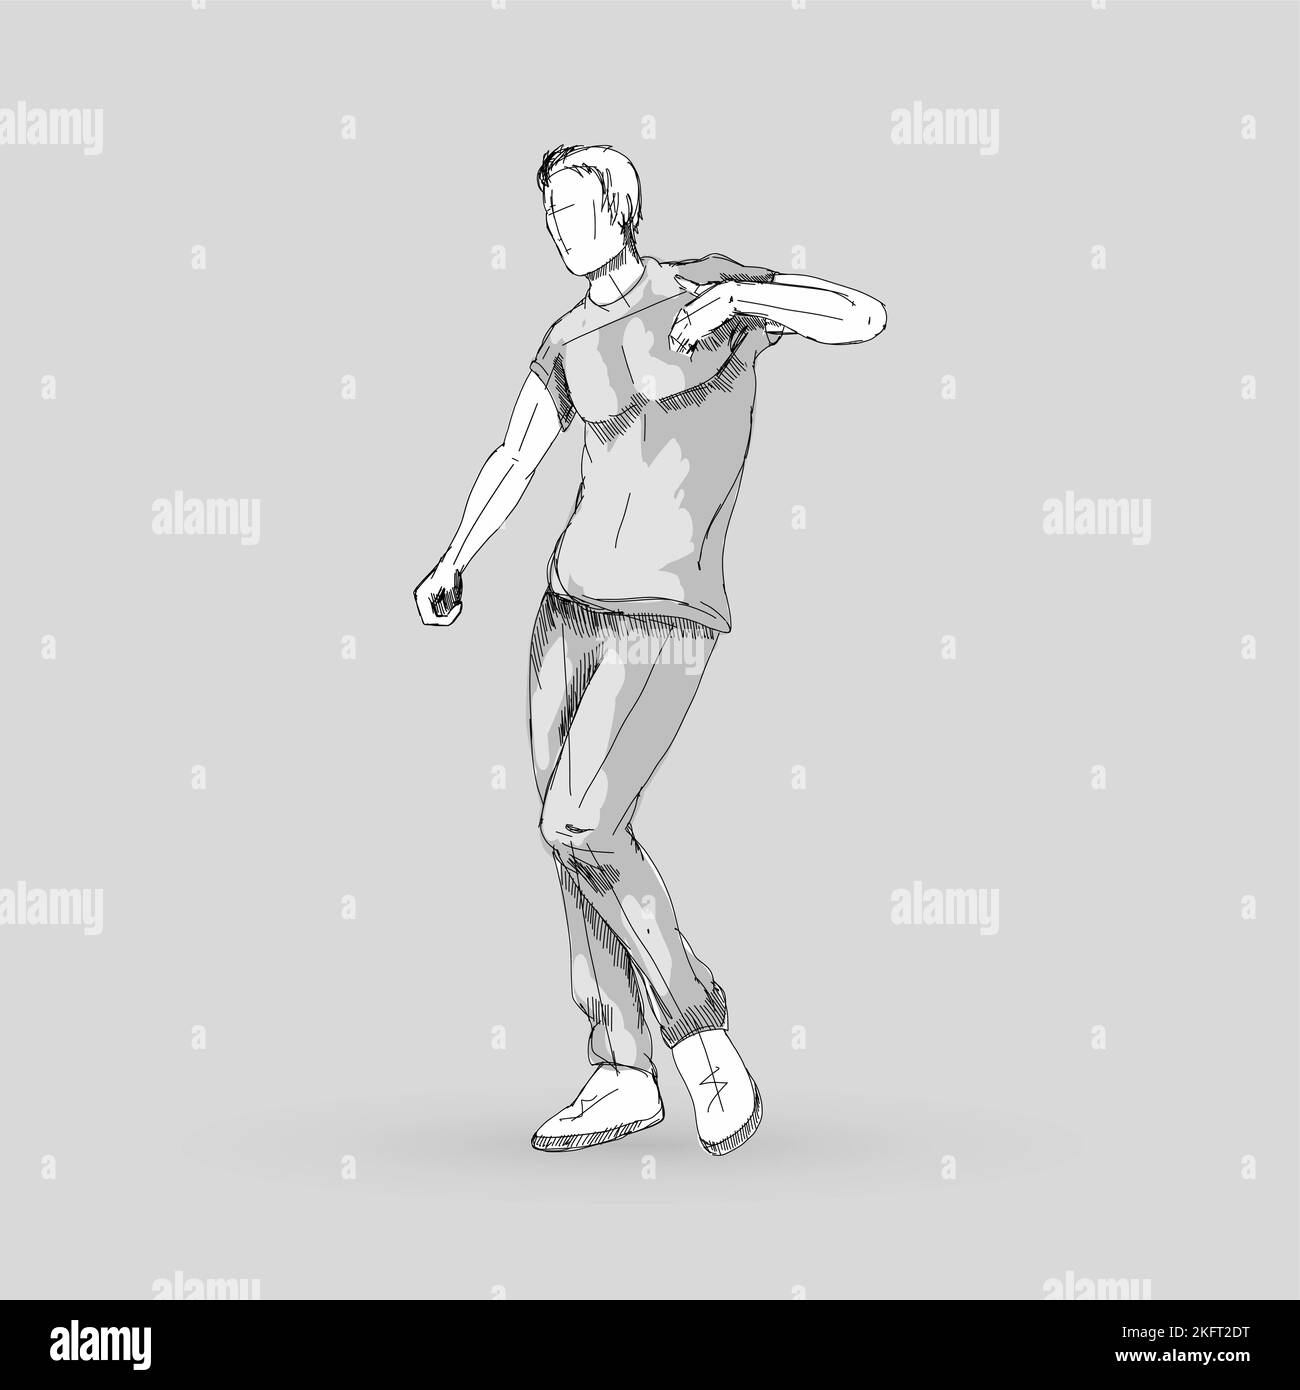 Modern Style Dancer Posing Sketch of a Man Dancer Hip Hop Choreography on a Gray Stock Vector